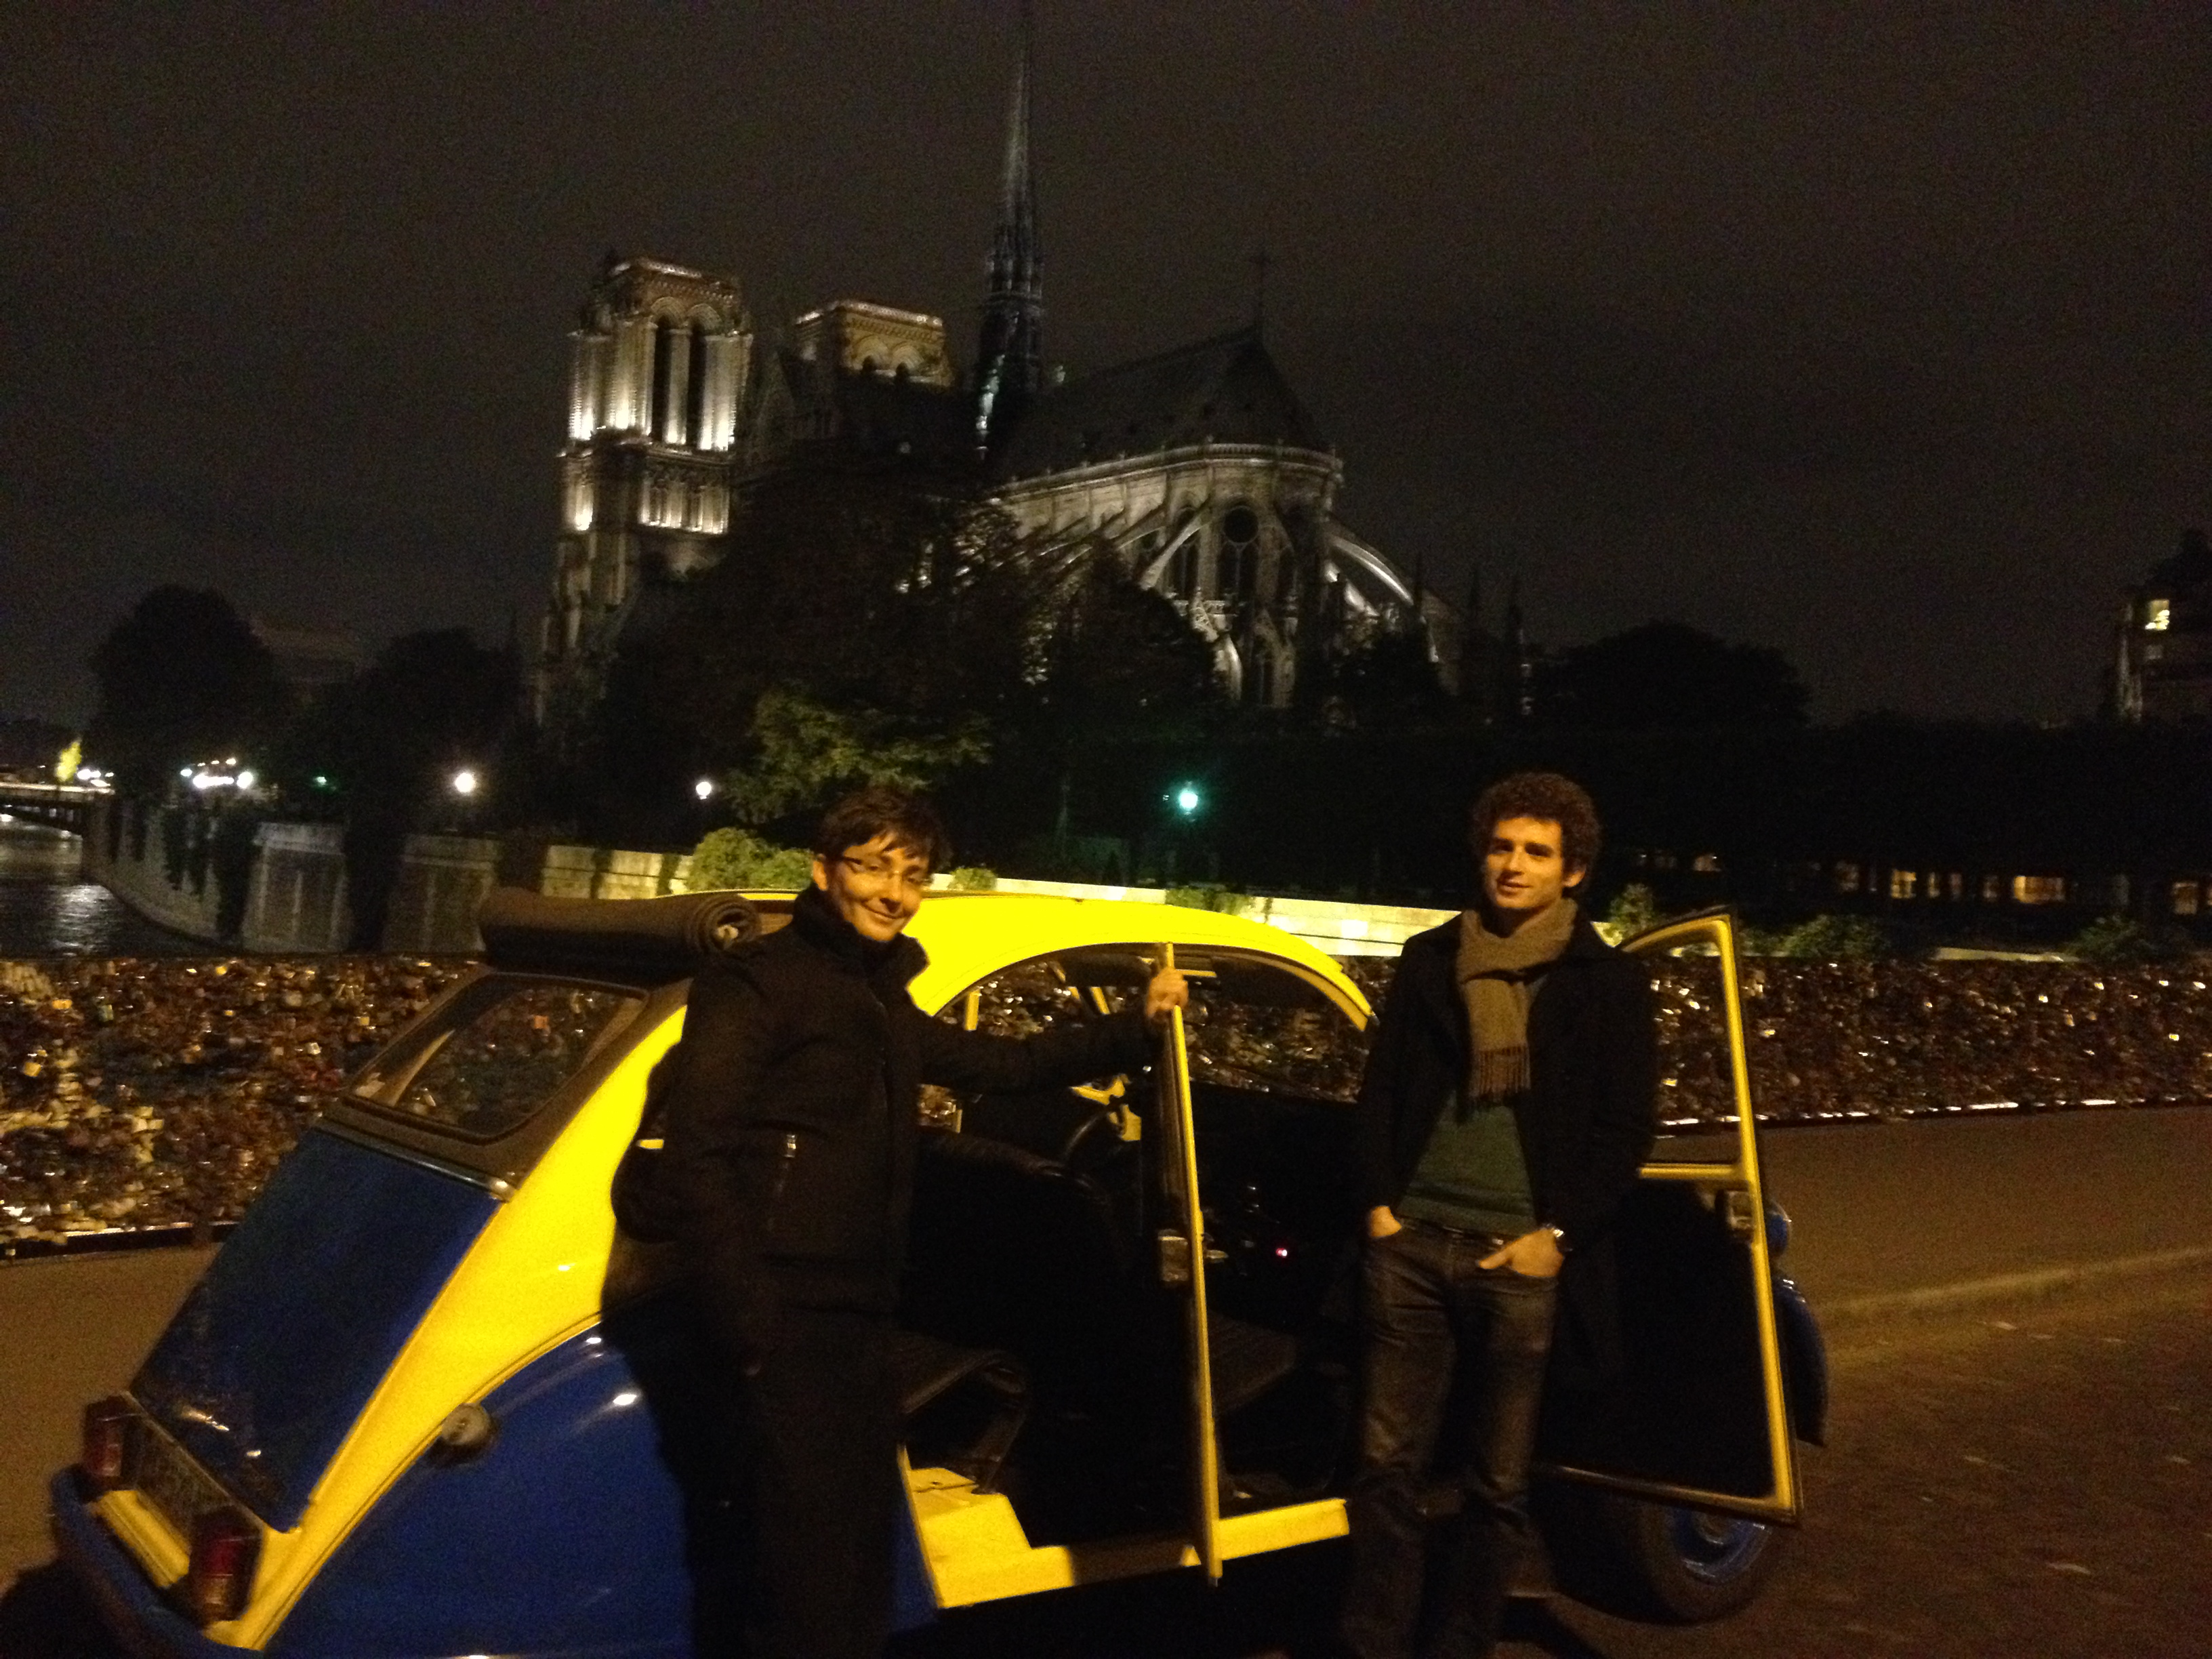 2CV Paris Tour - Paris By Night and Notre Dame 2